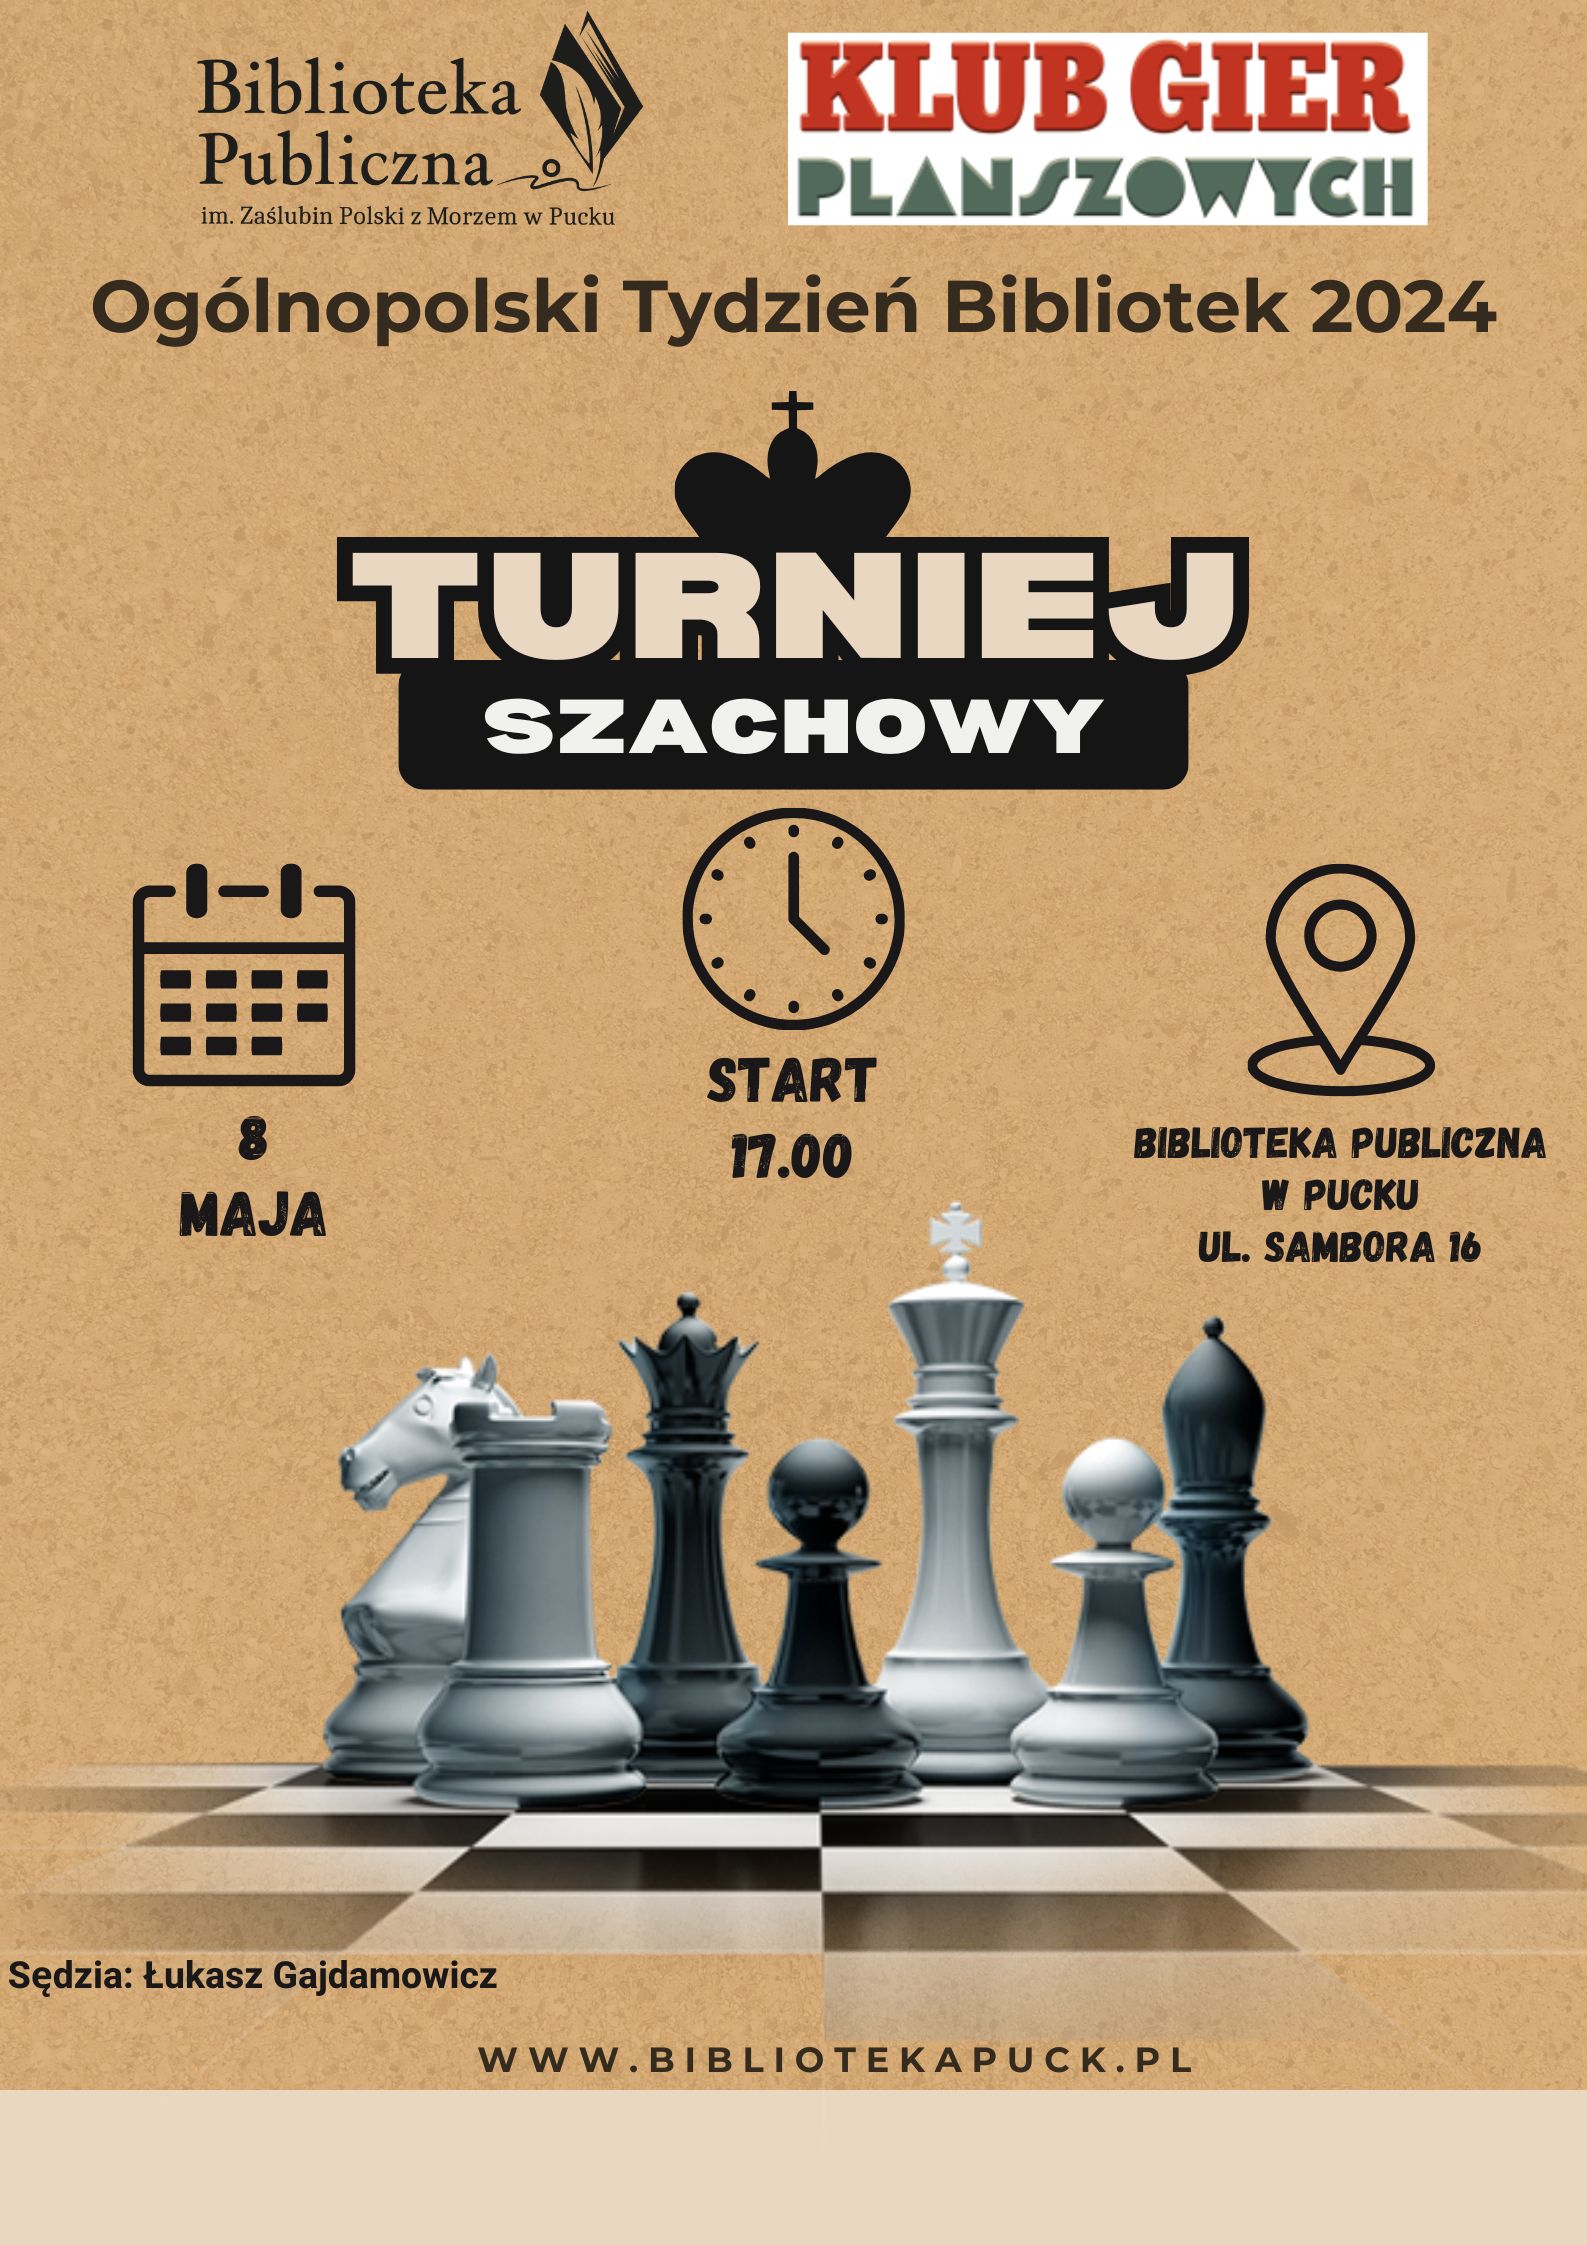 08.05 Turniej szachowy